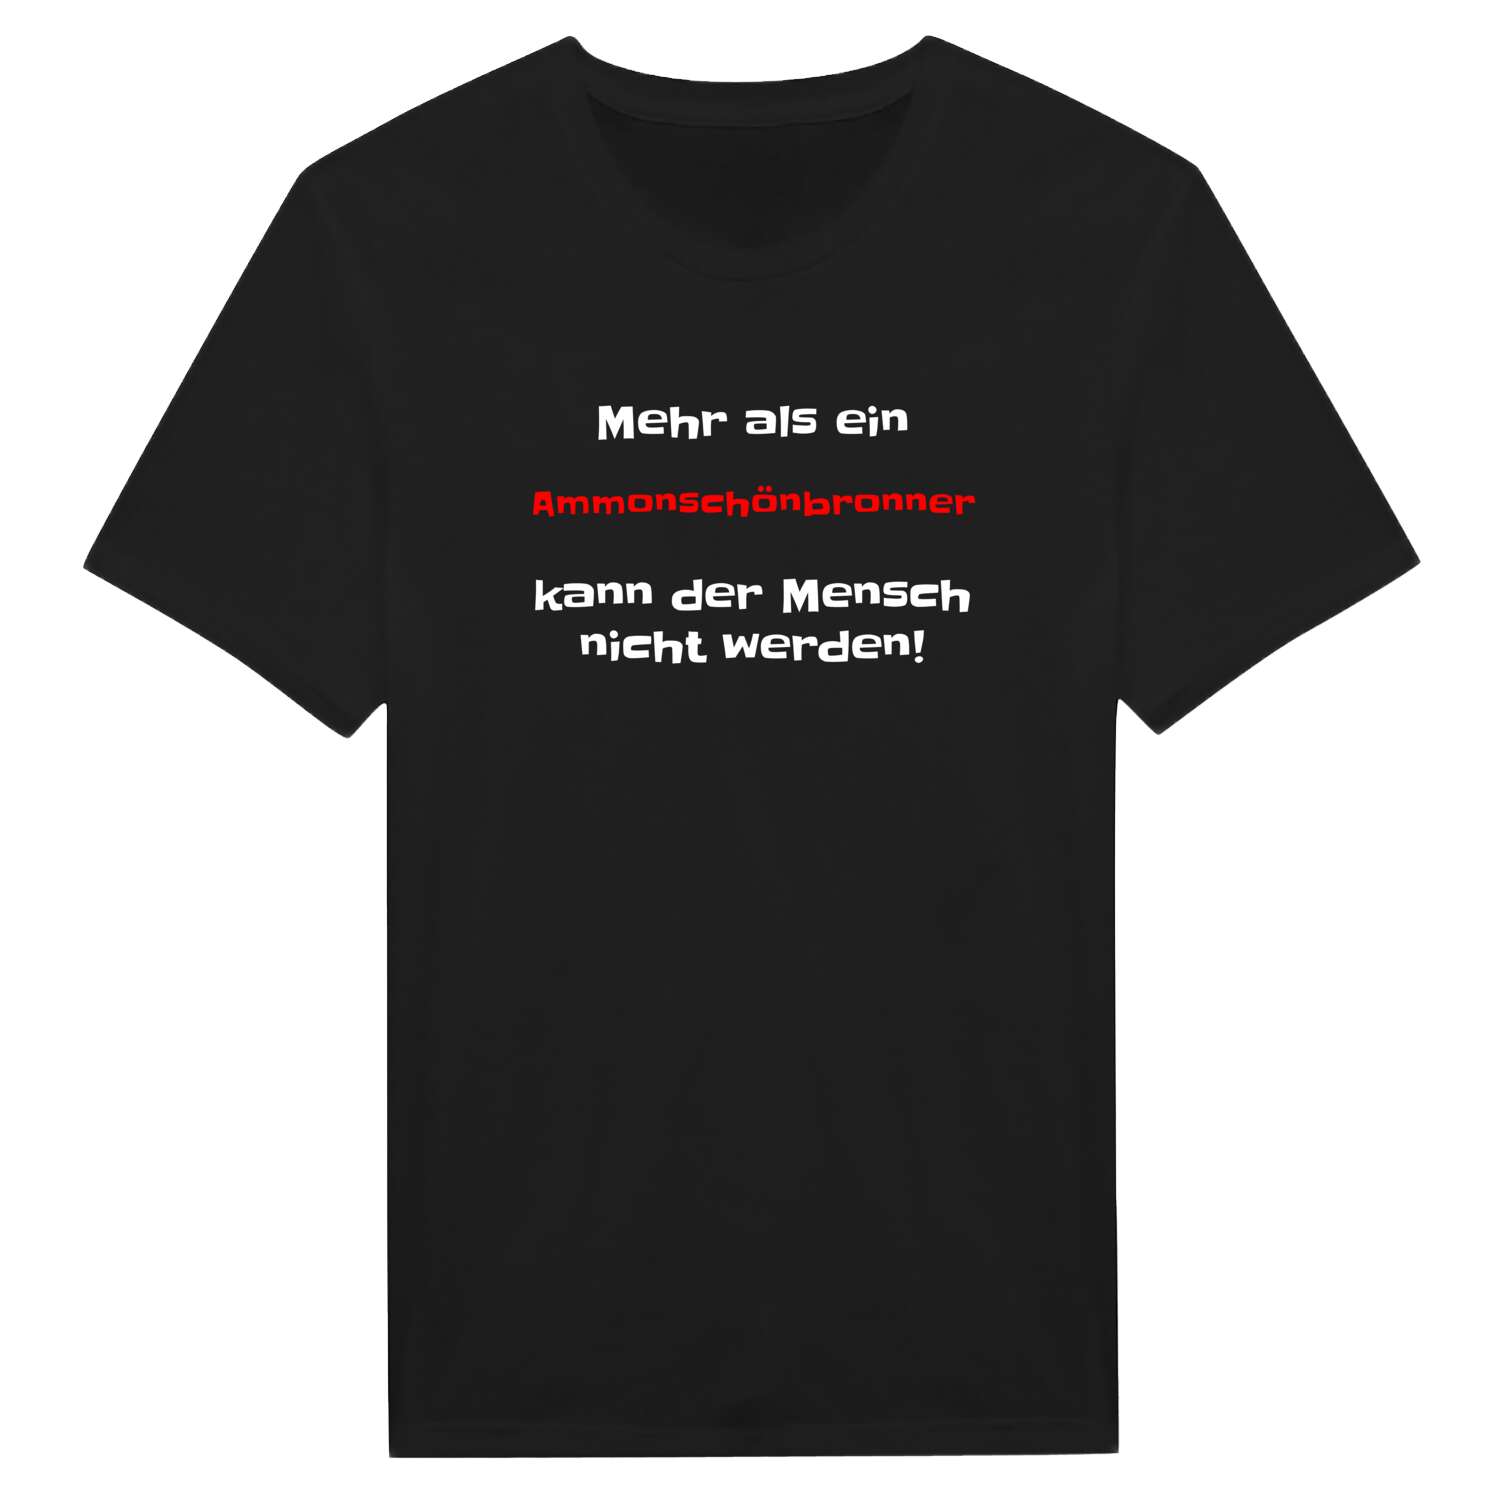 Ammonschönbronn T-Shirt »Mehr als ein«